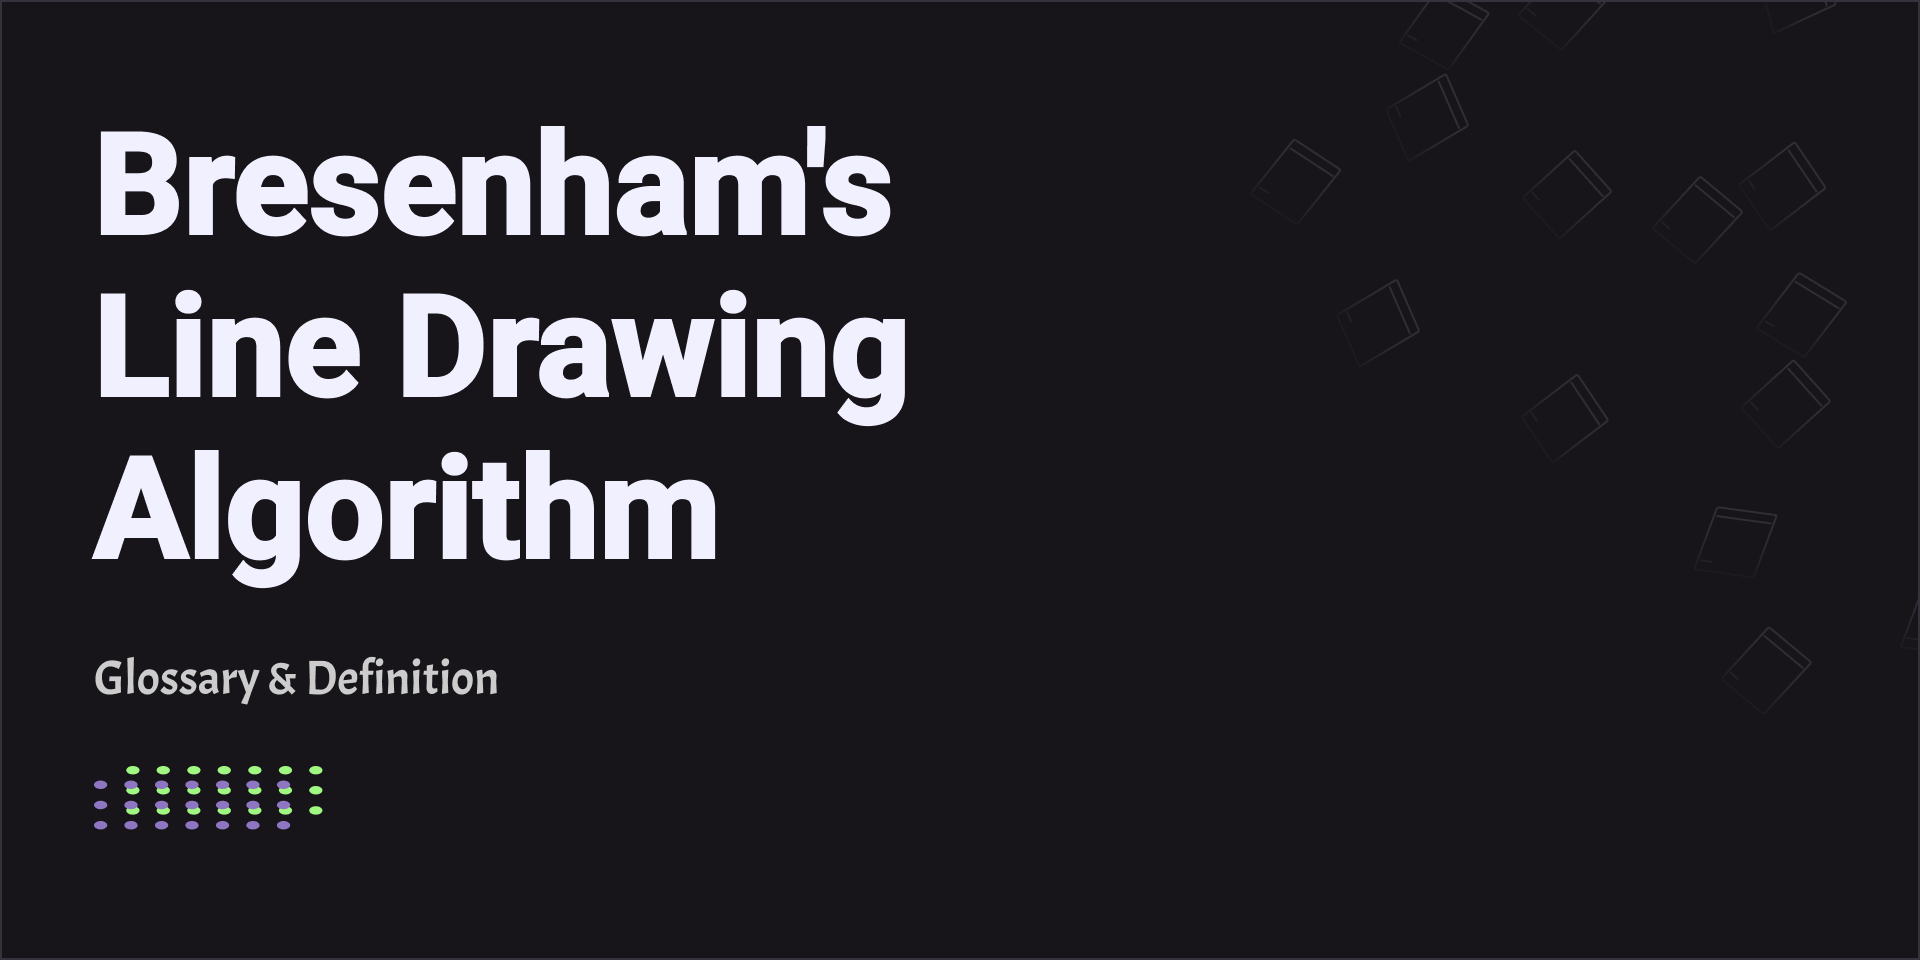 Bresenham's Line Drawing Algorithm